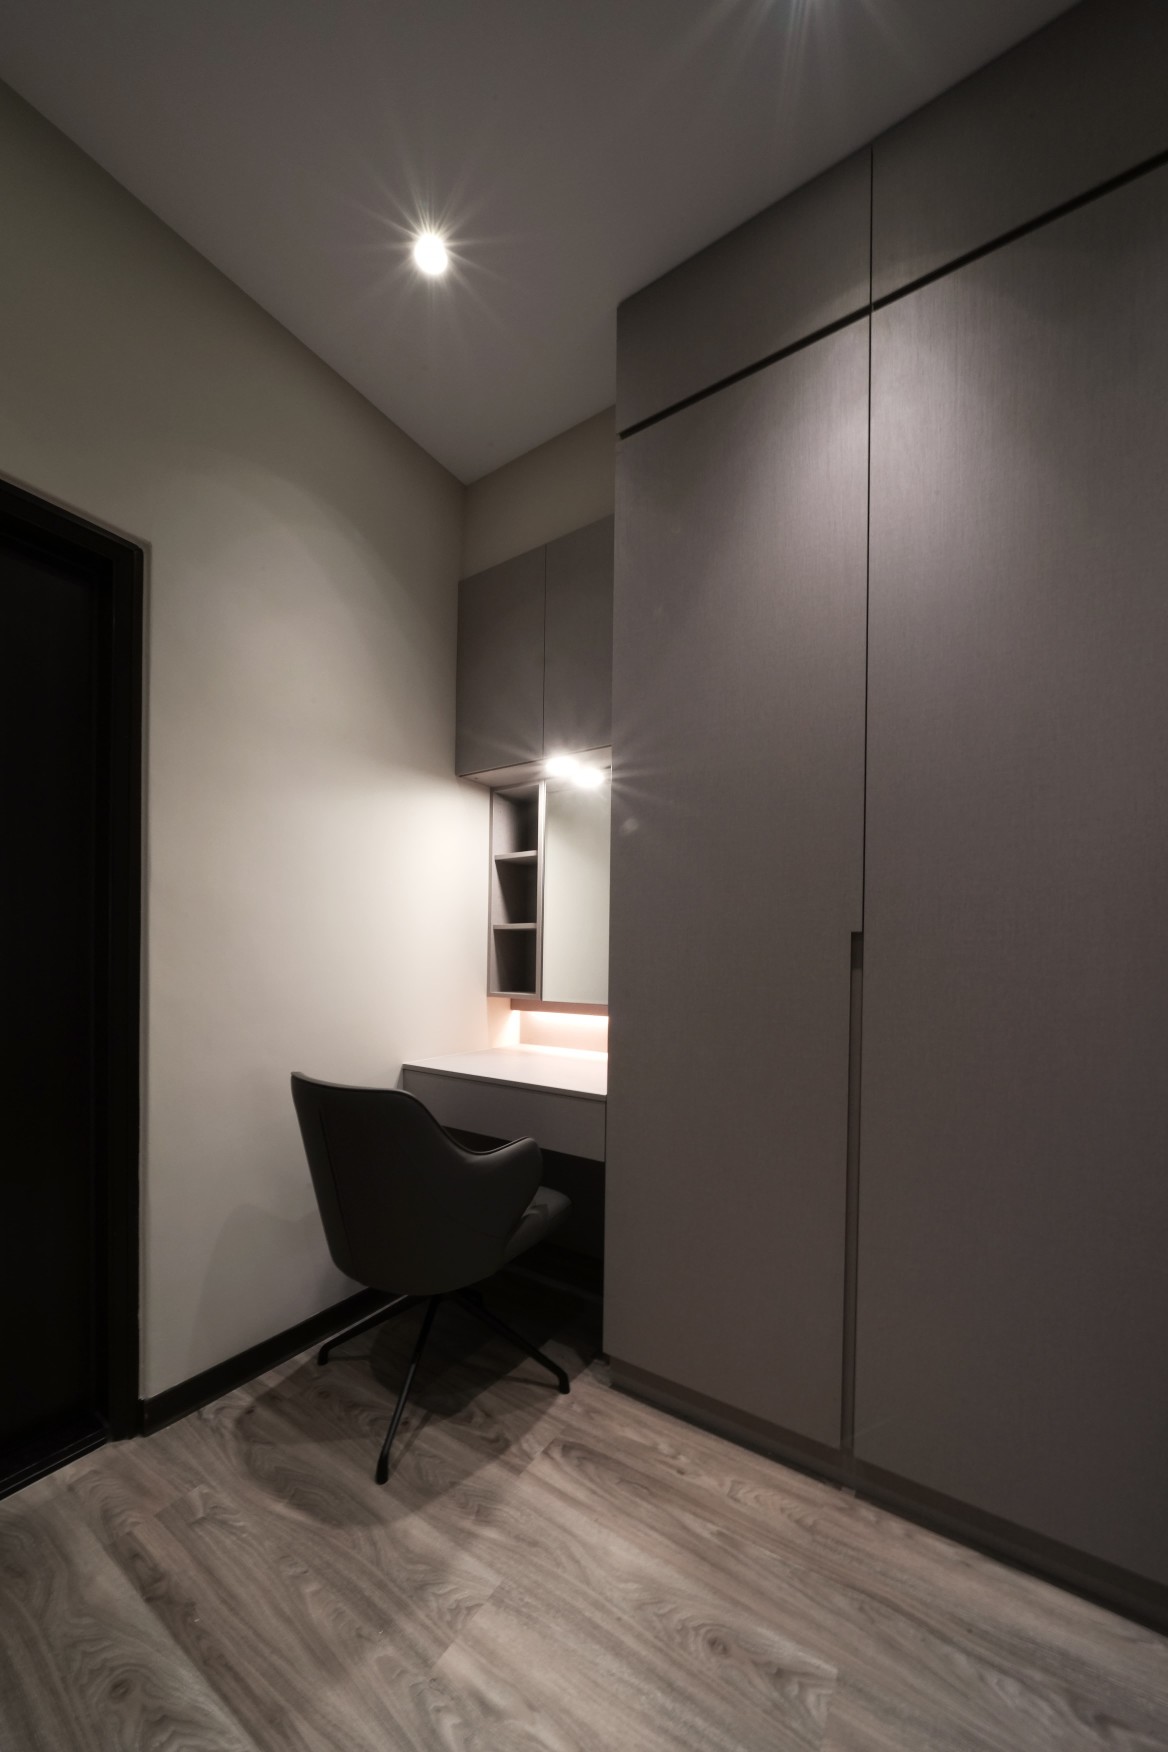 保留建商衛浴位置，將更衣室設置於衛浴前，更符合使用者動線。